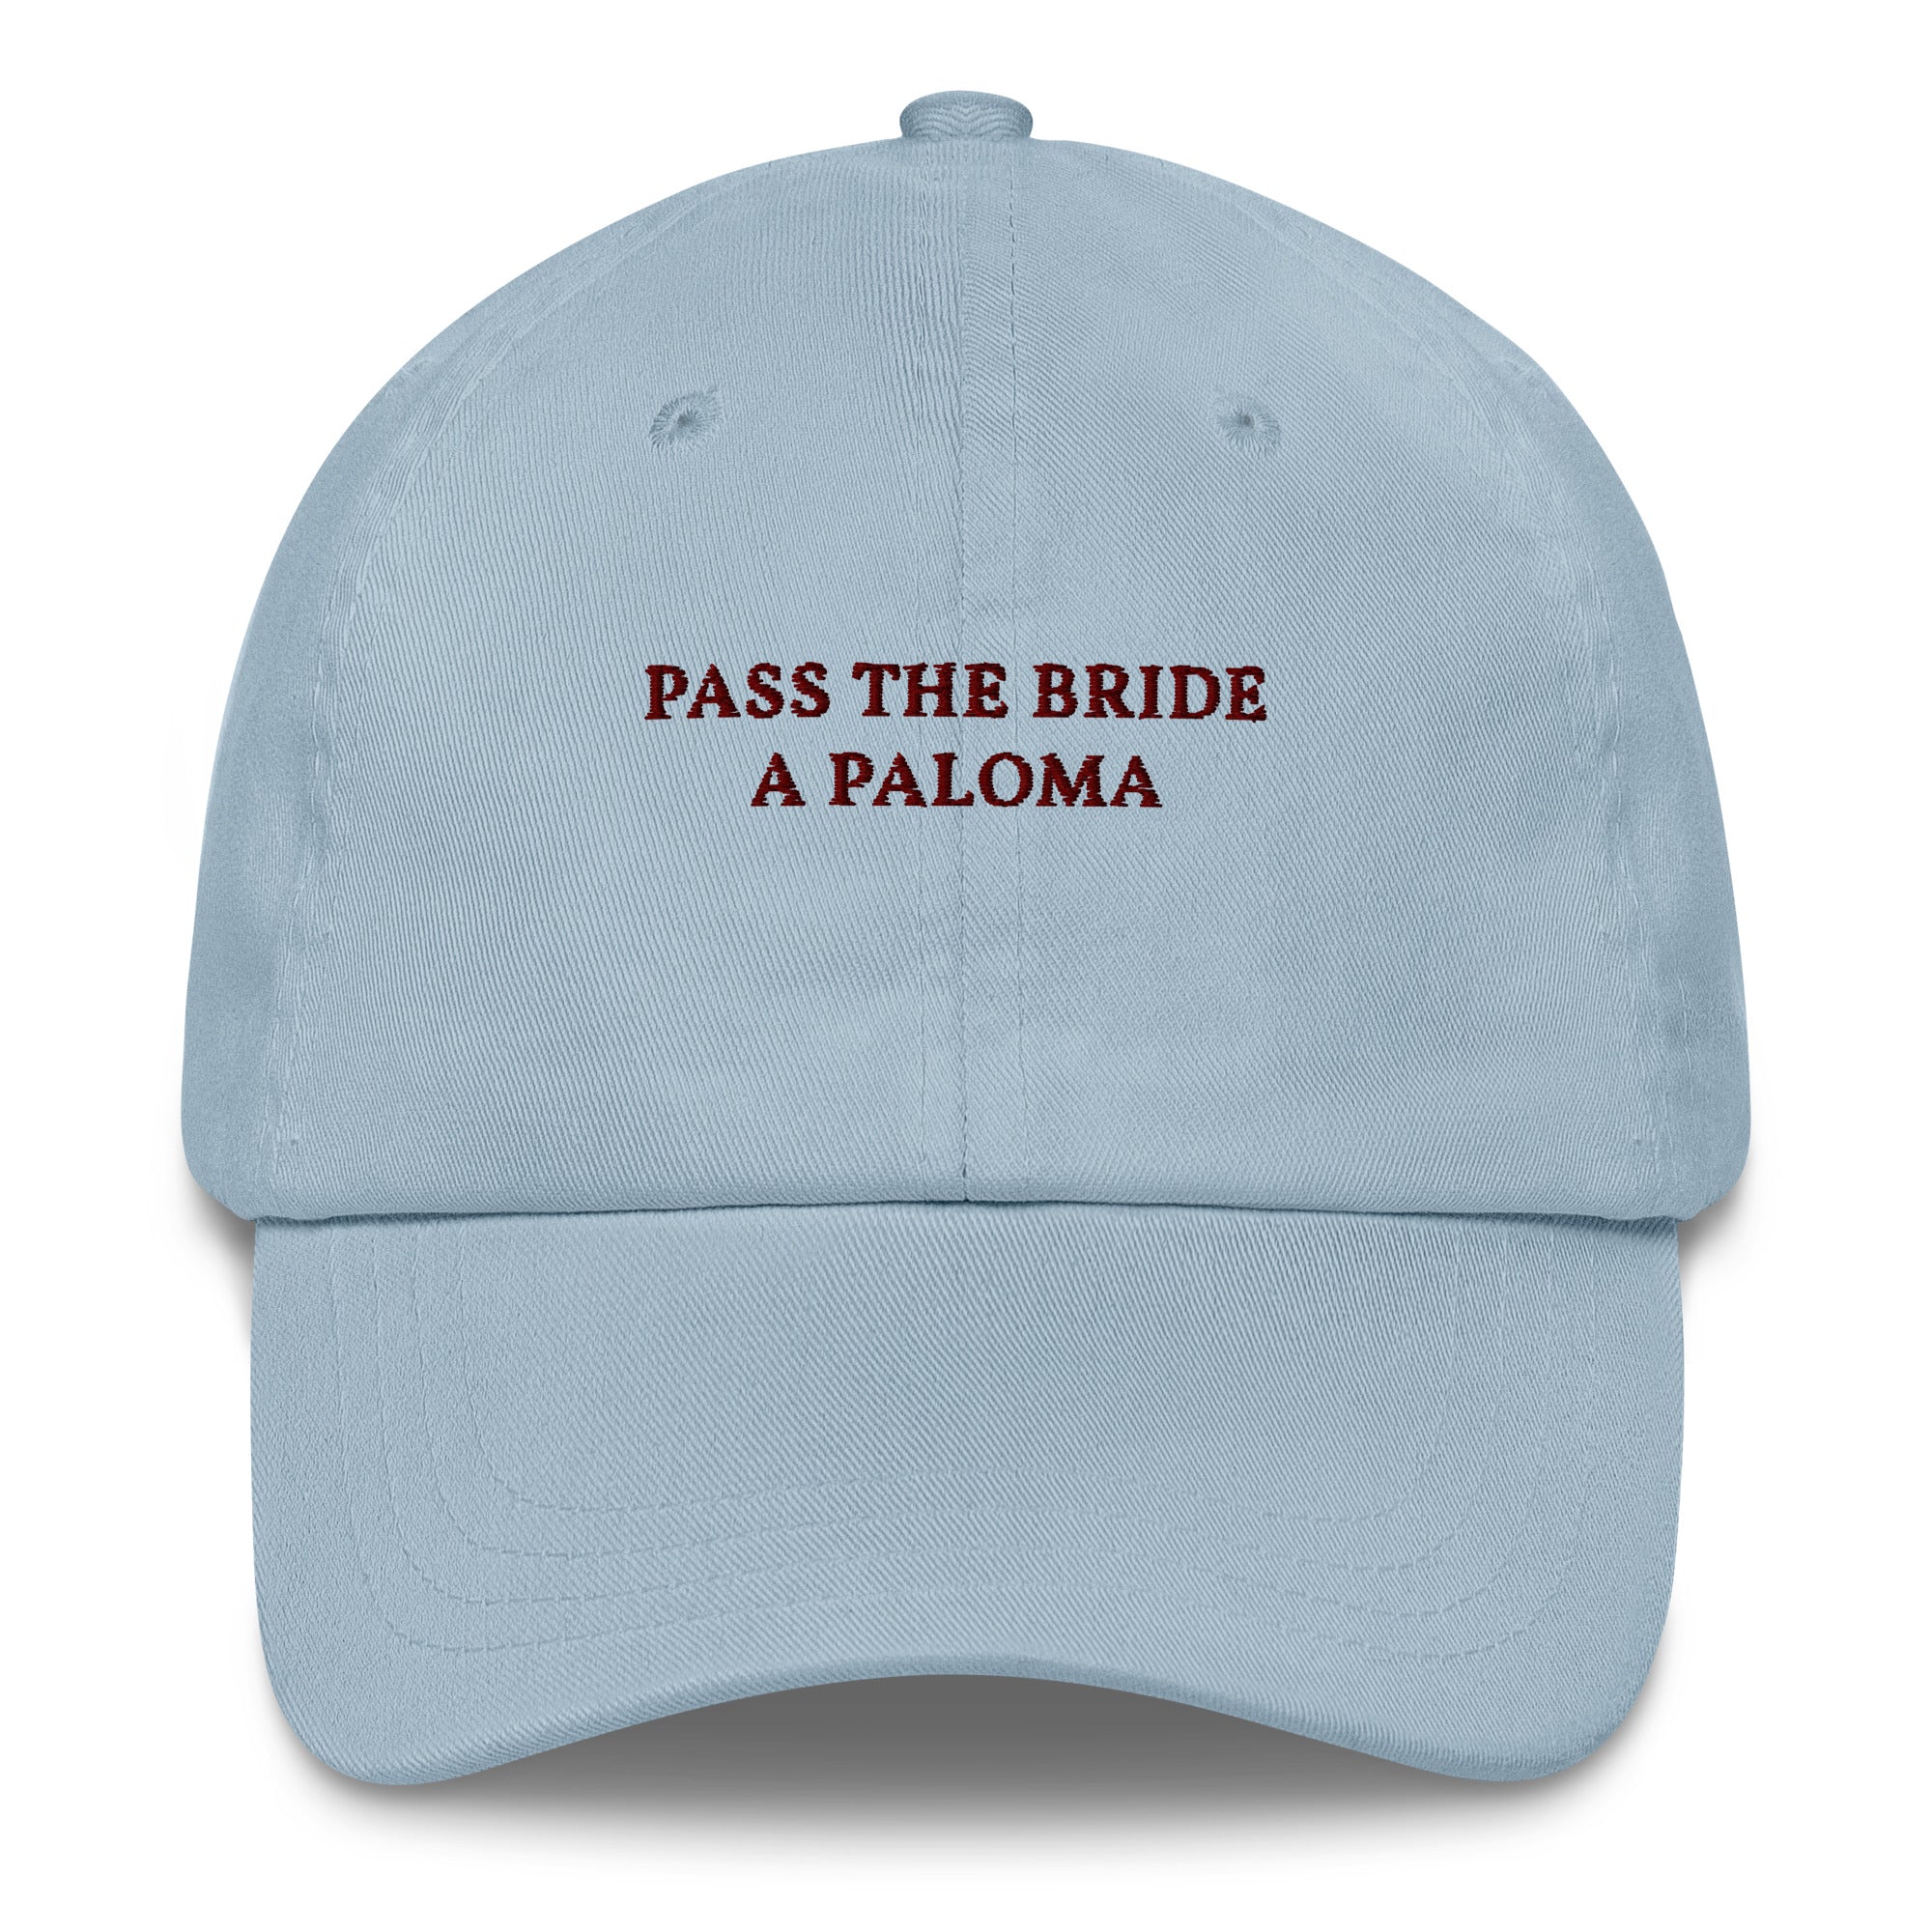 Pass the Bride a Paloma - Cap